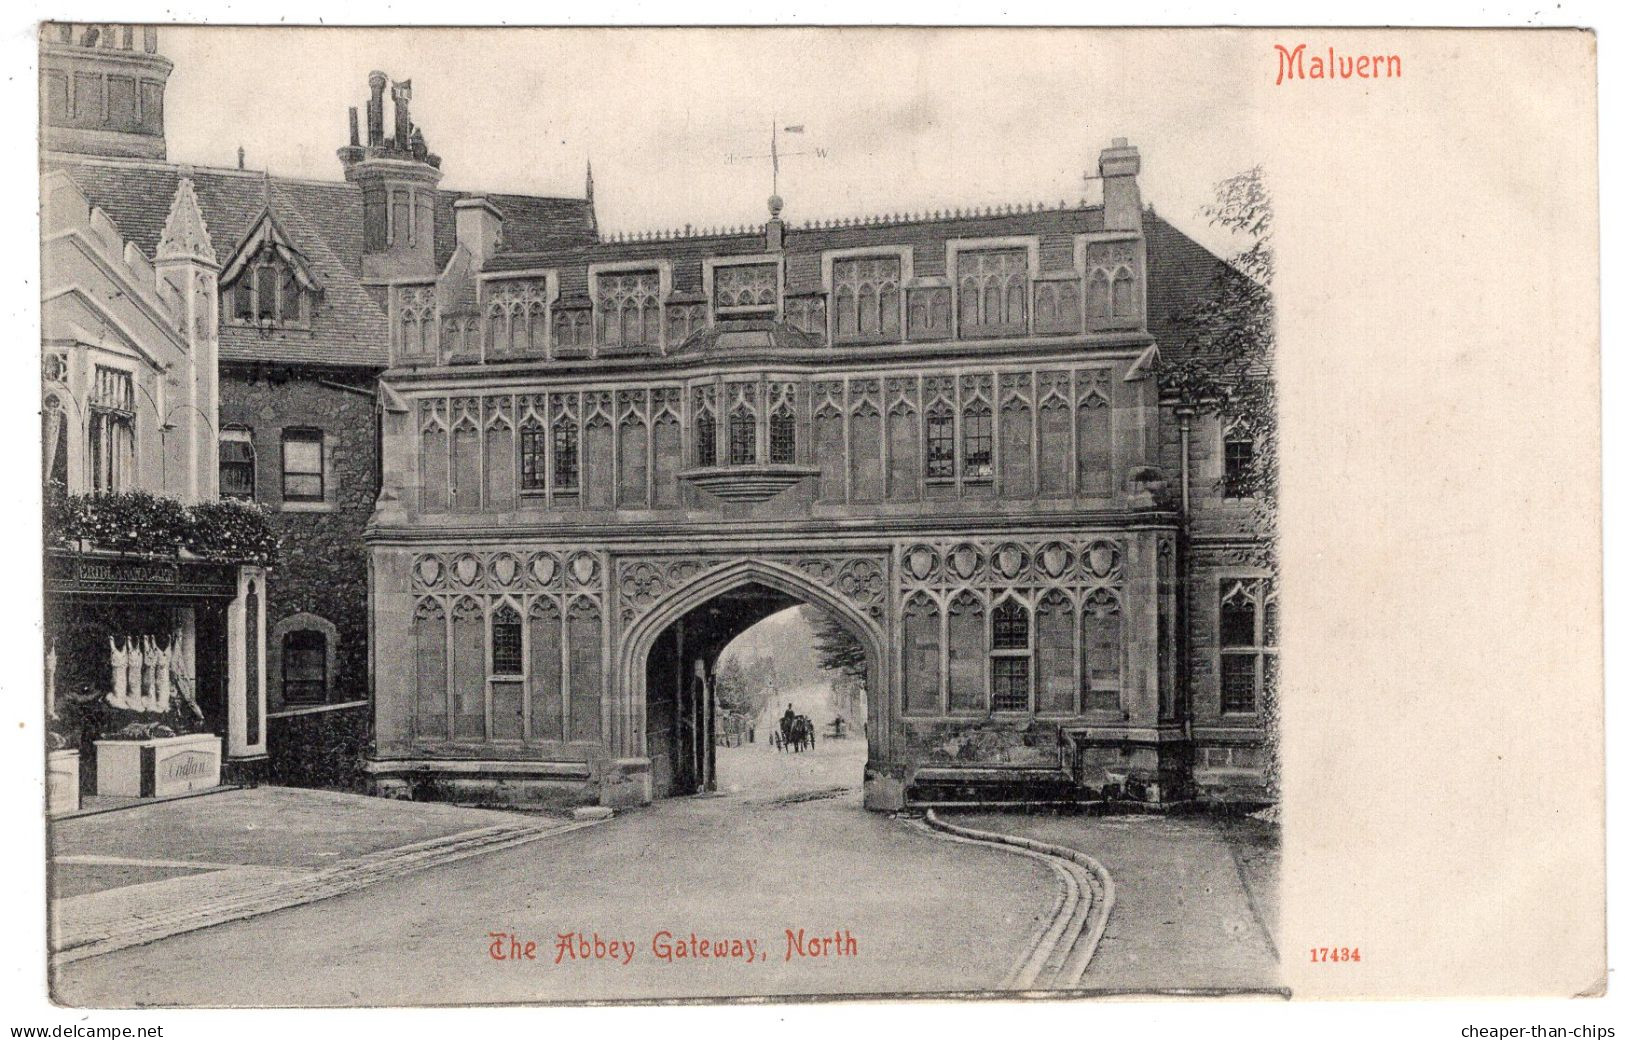 MALVERN - The Abbey Gateway, North - Stengel 17434 - Butchers Shop - Malvern